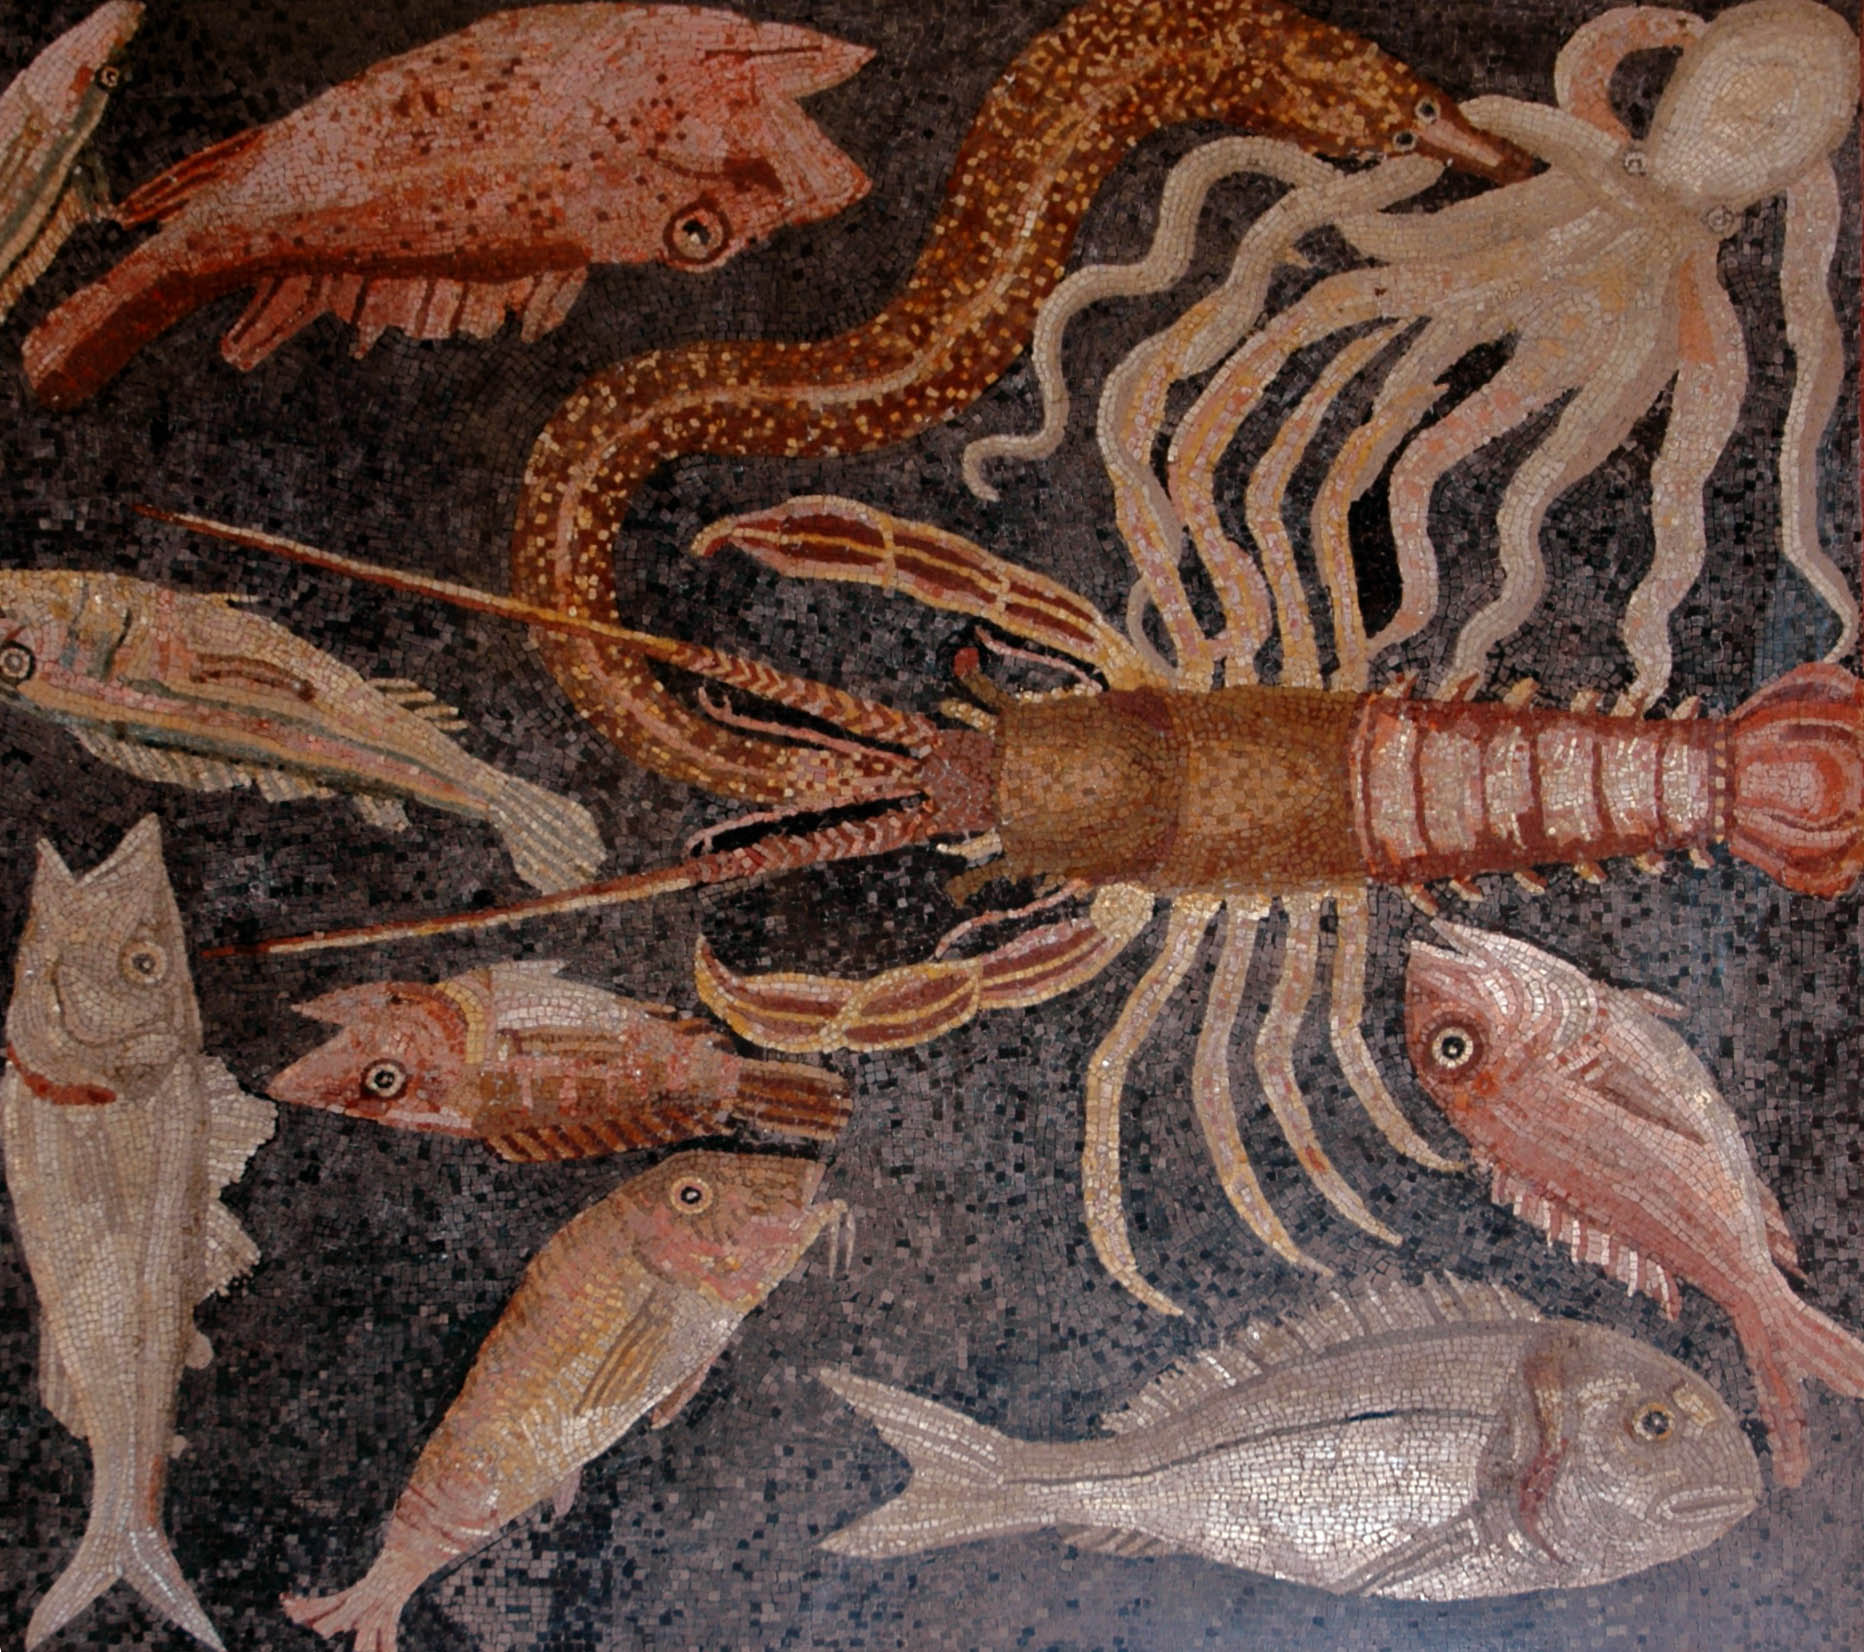 Рыба Барабулька краснобородка римская мозаика пейзажи природы Альберт Сафиуллин